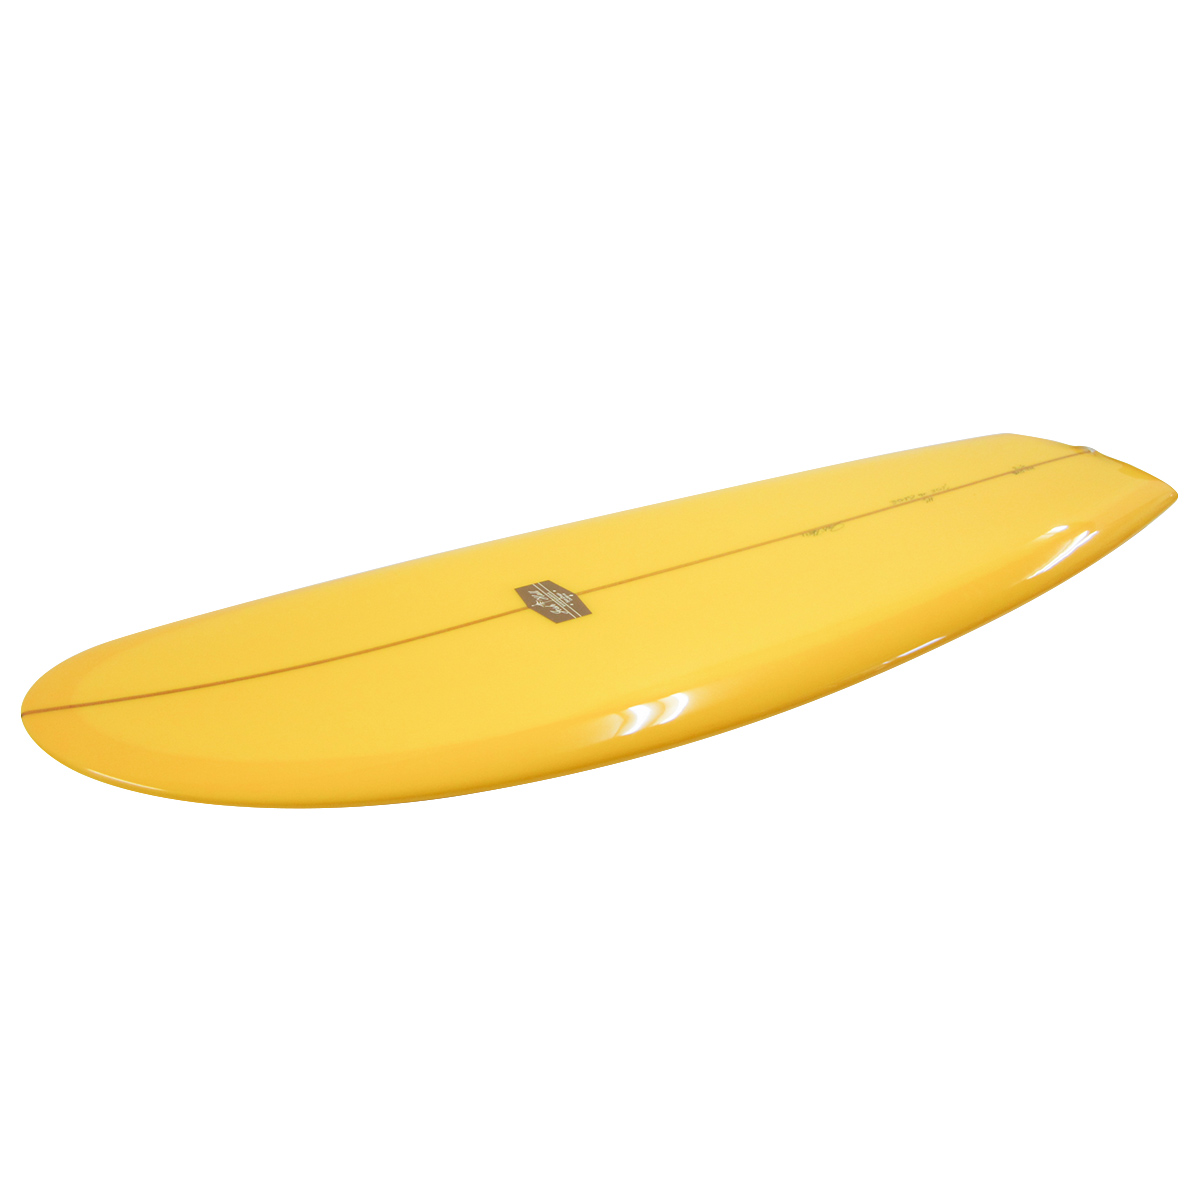  Josh Hall Surfboards / PESCADO HINCHADO VELO 5`3